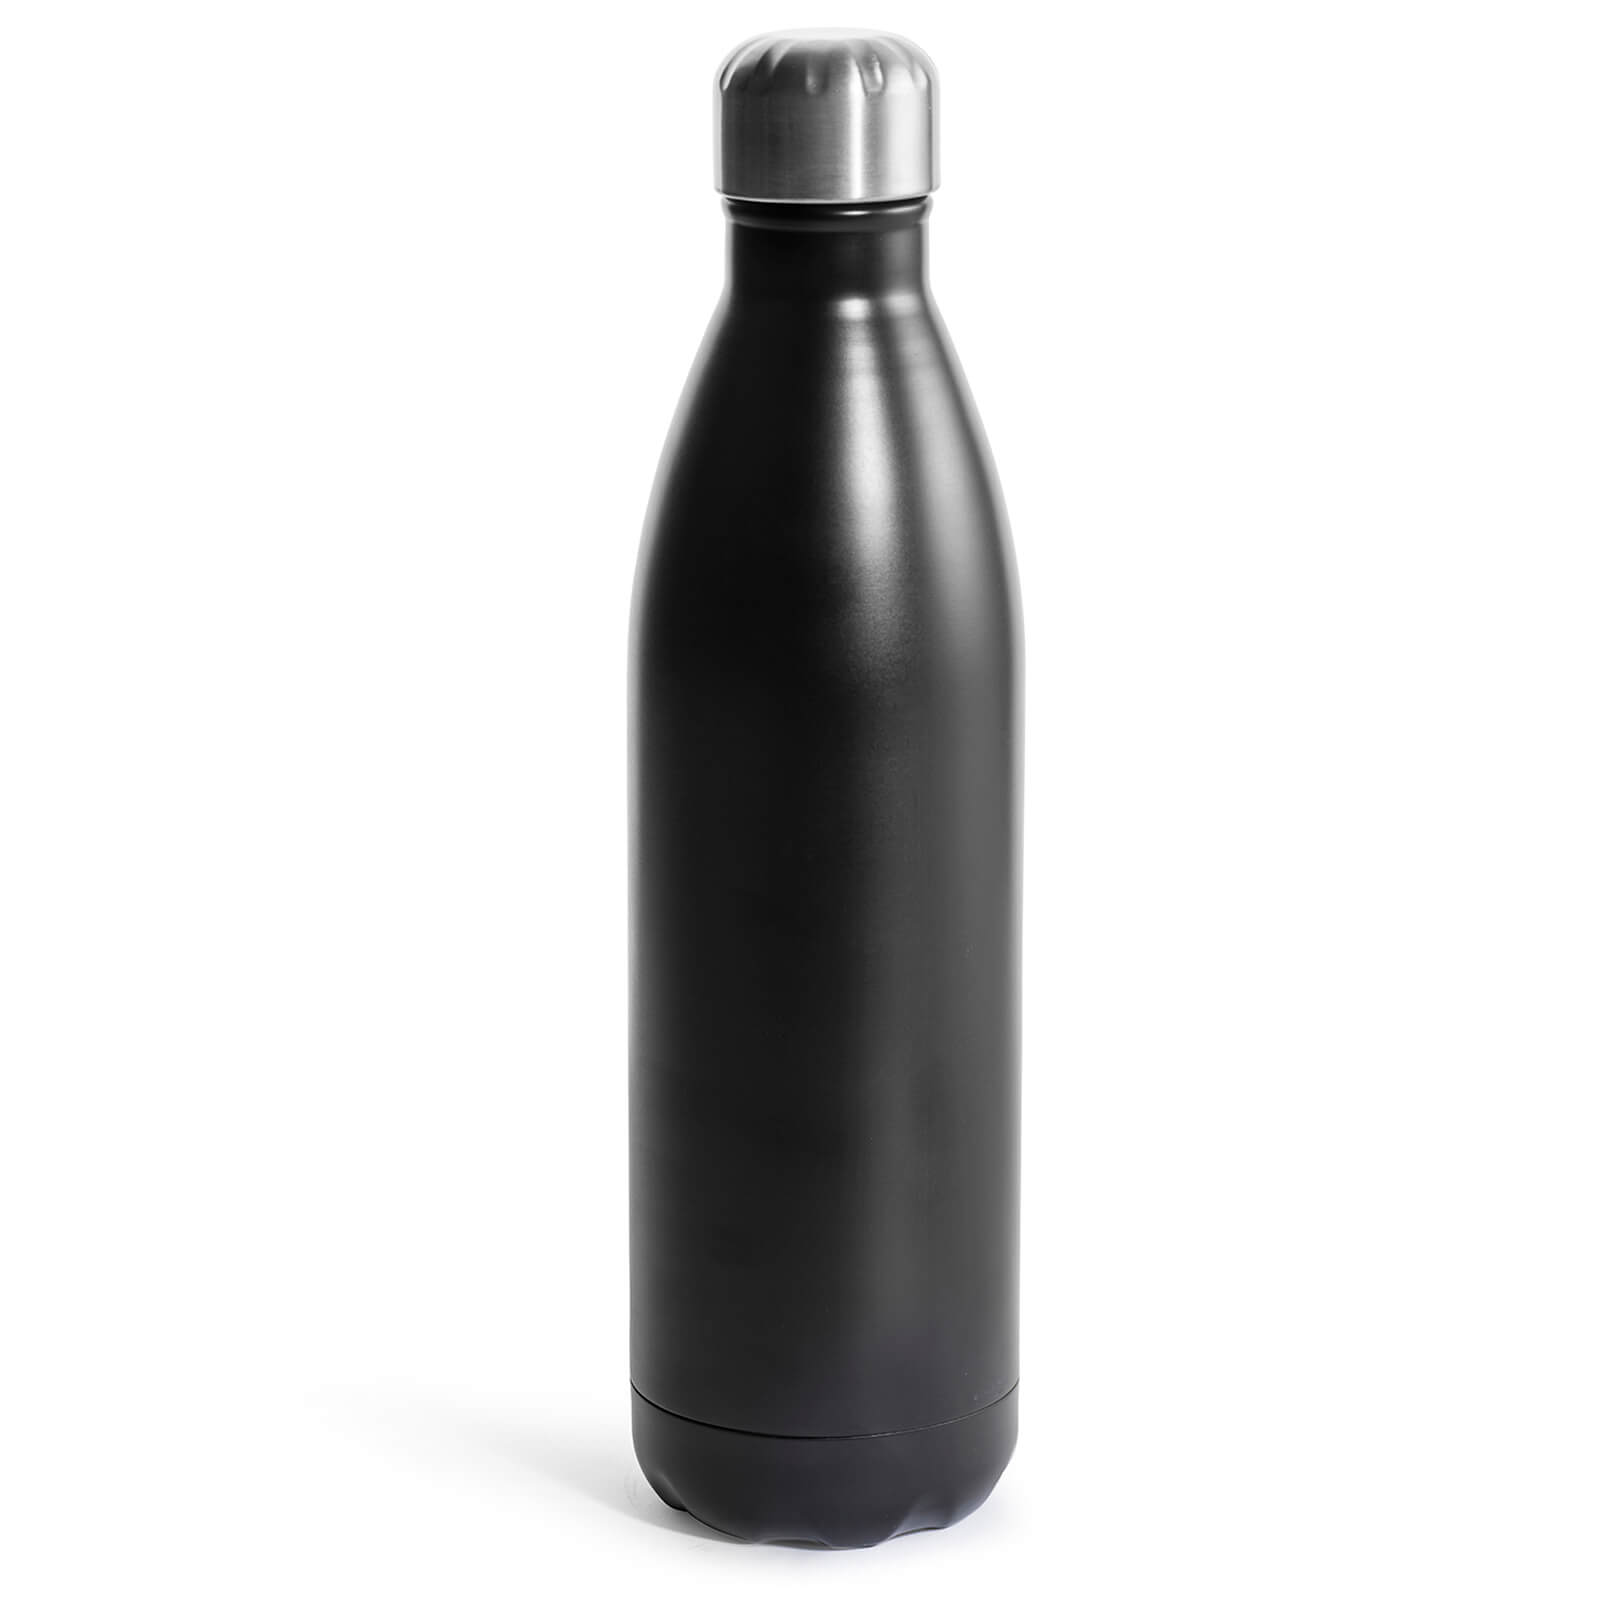 Image of Sagaform Steel Hot and Cold Bottle - Black (75cl)